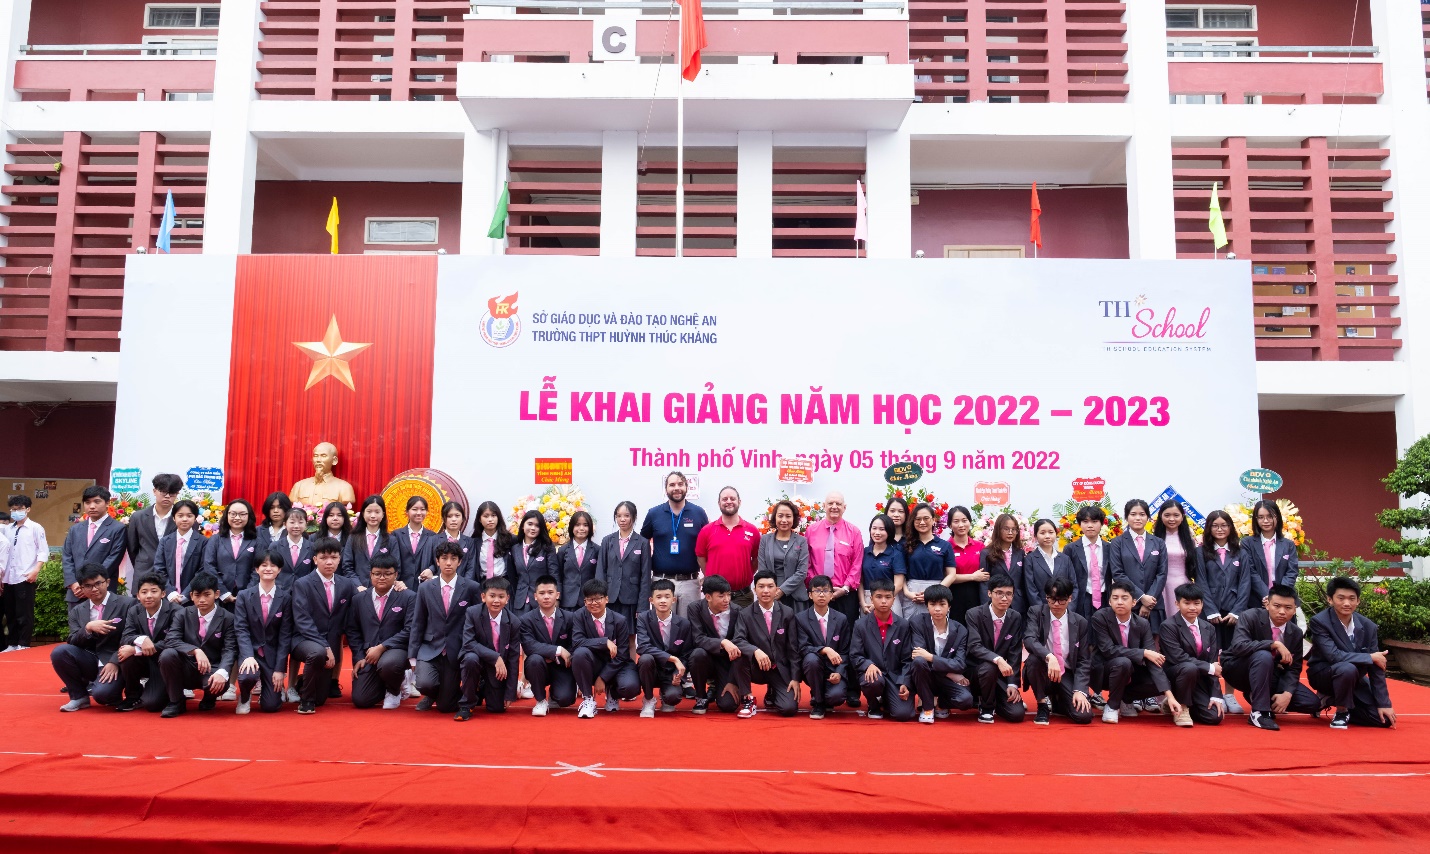 TH School khai giảng năm học mới và khánh thành cơ sở thứ 3 tại Nghệ An - Ảnh 4.